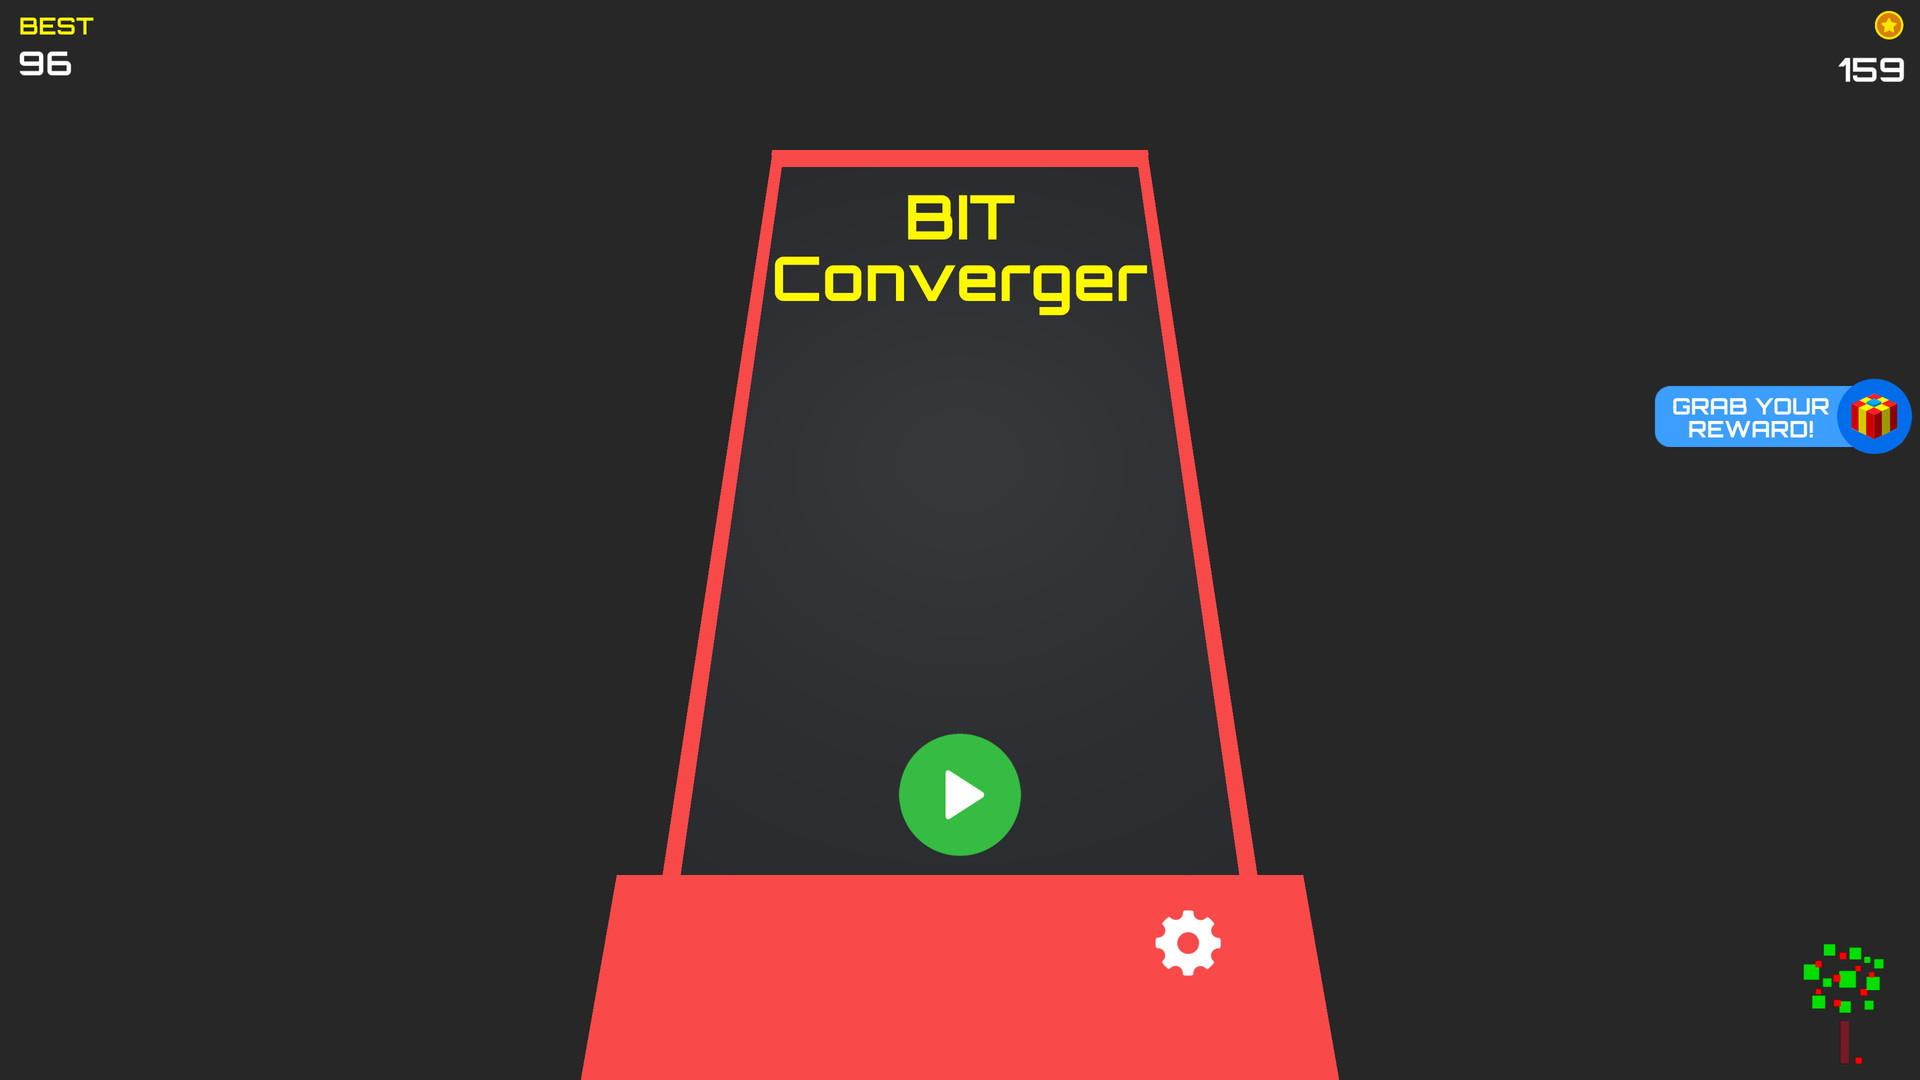 My Neighborhood Arcade: Bit Converger Unit Featured Screenshot #1